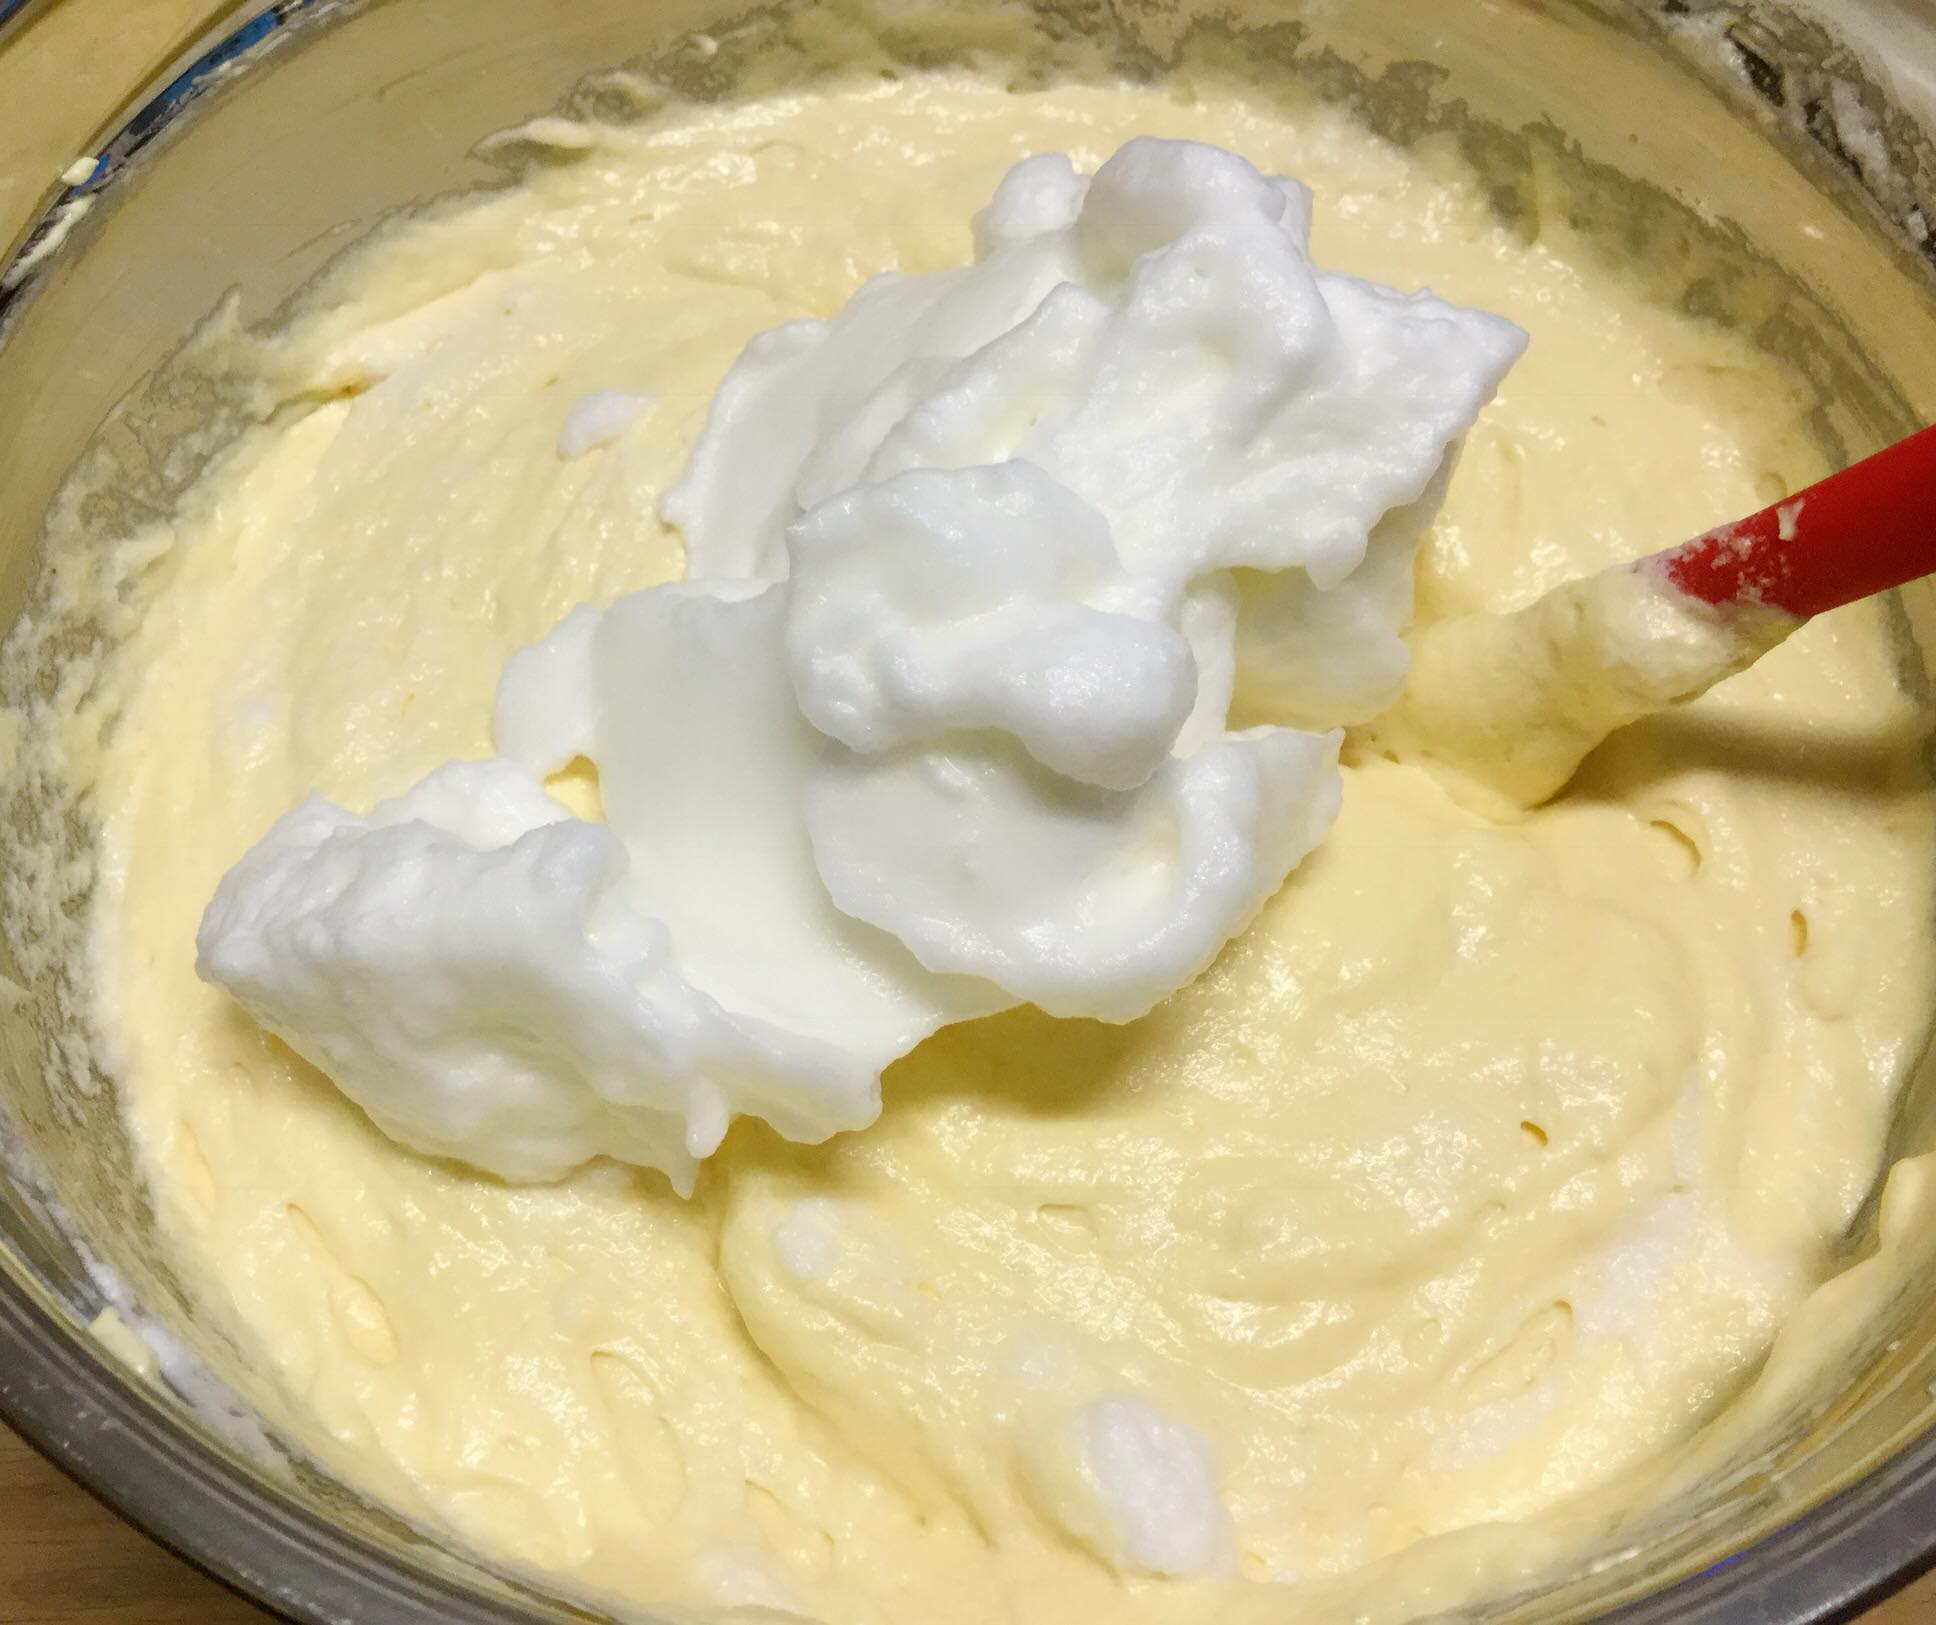 Blending egg white and egg yolk mixture